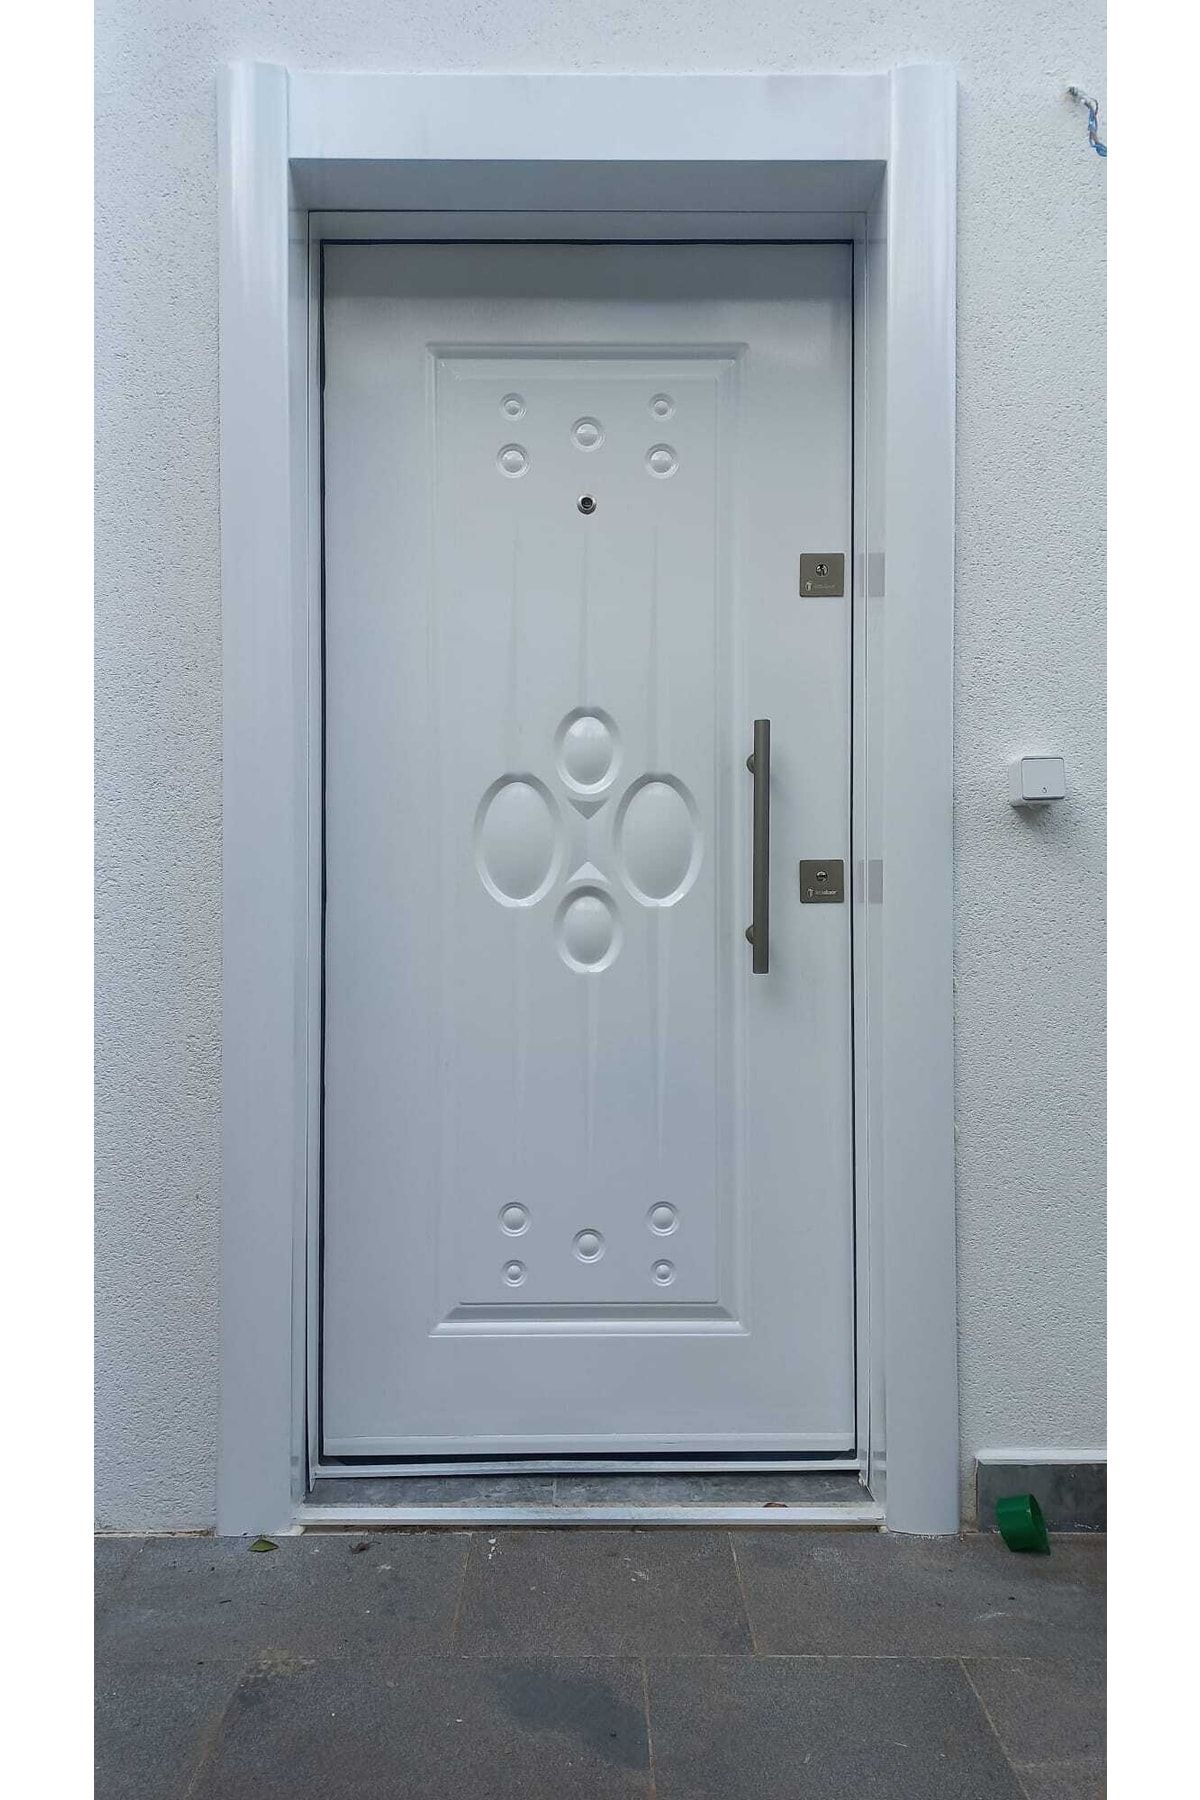 tezwood ahşap kapı sanayi Sac Celik Kapi Tırnaklı Sistem Çelik Kapı, Ahşap Kaplama Kabartmalı Model Daire Kapısı Sol Açılım